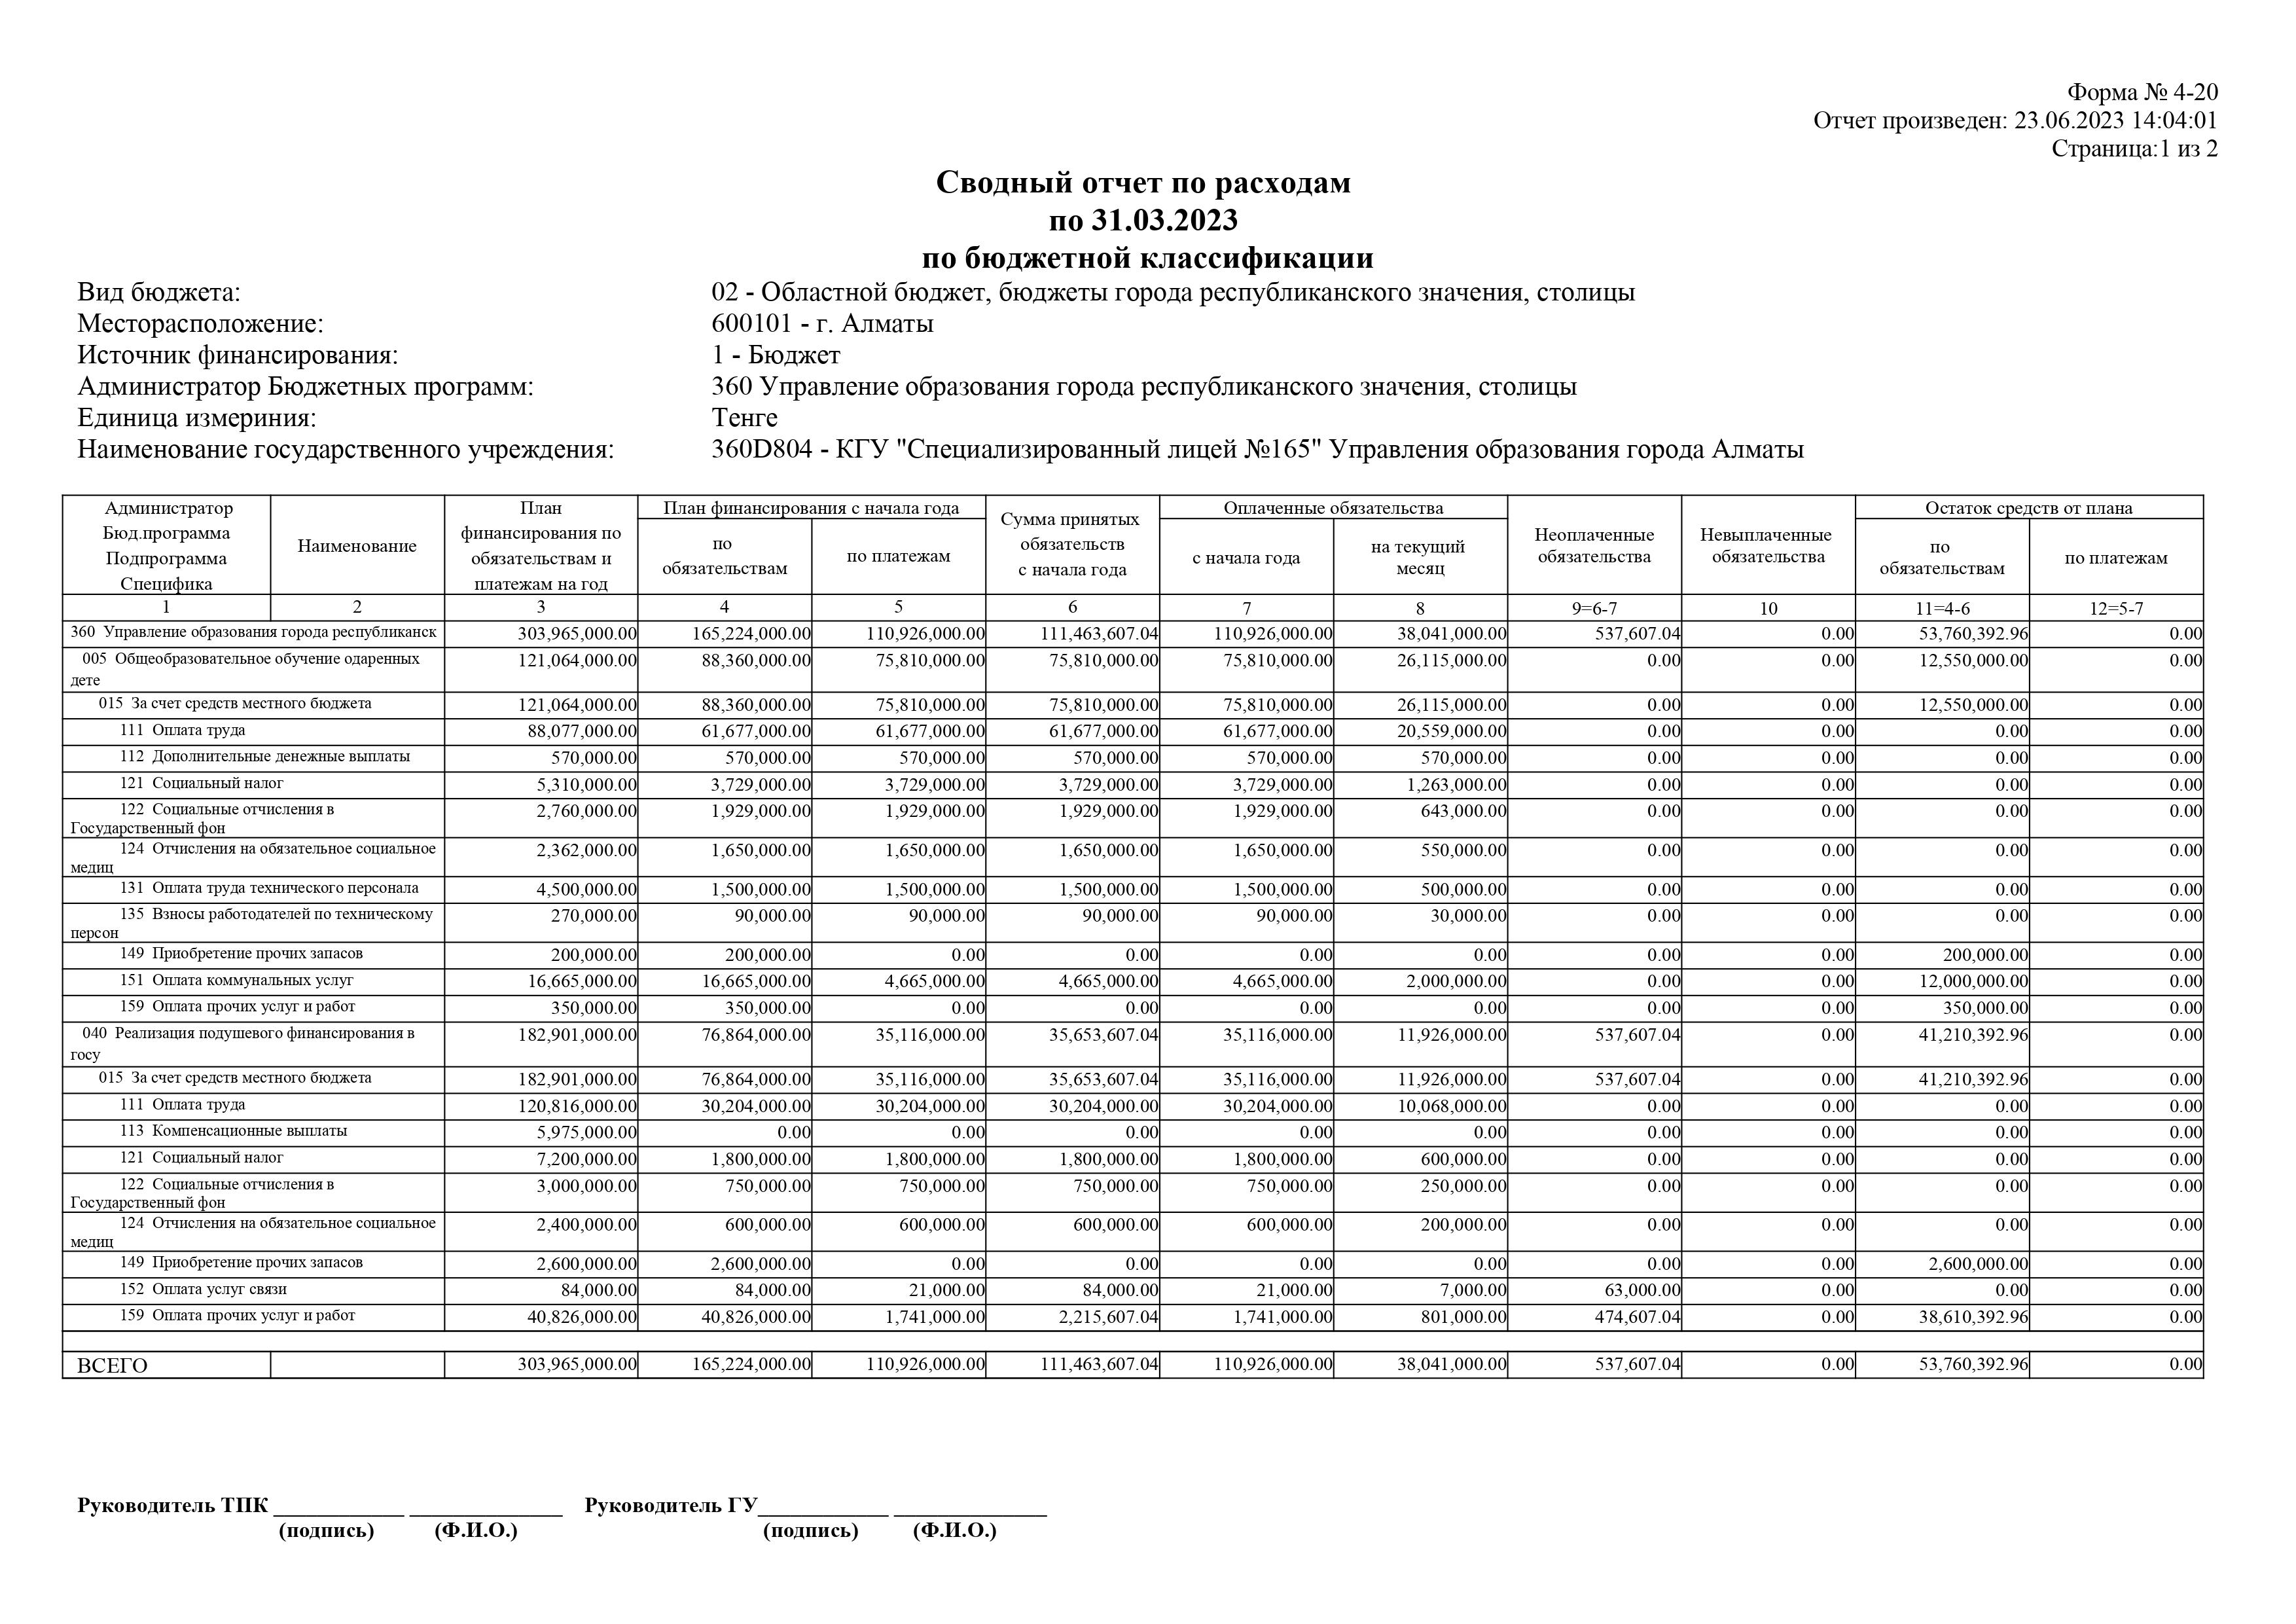 Сводный отчёт по расходам по 31.03.2023 по бюджетной классификации